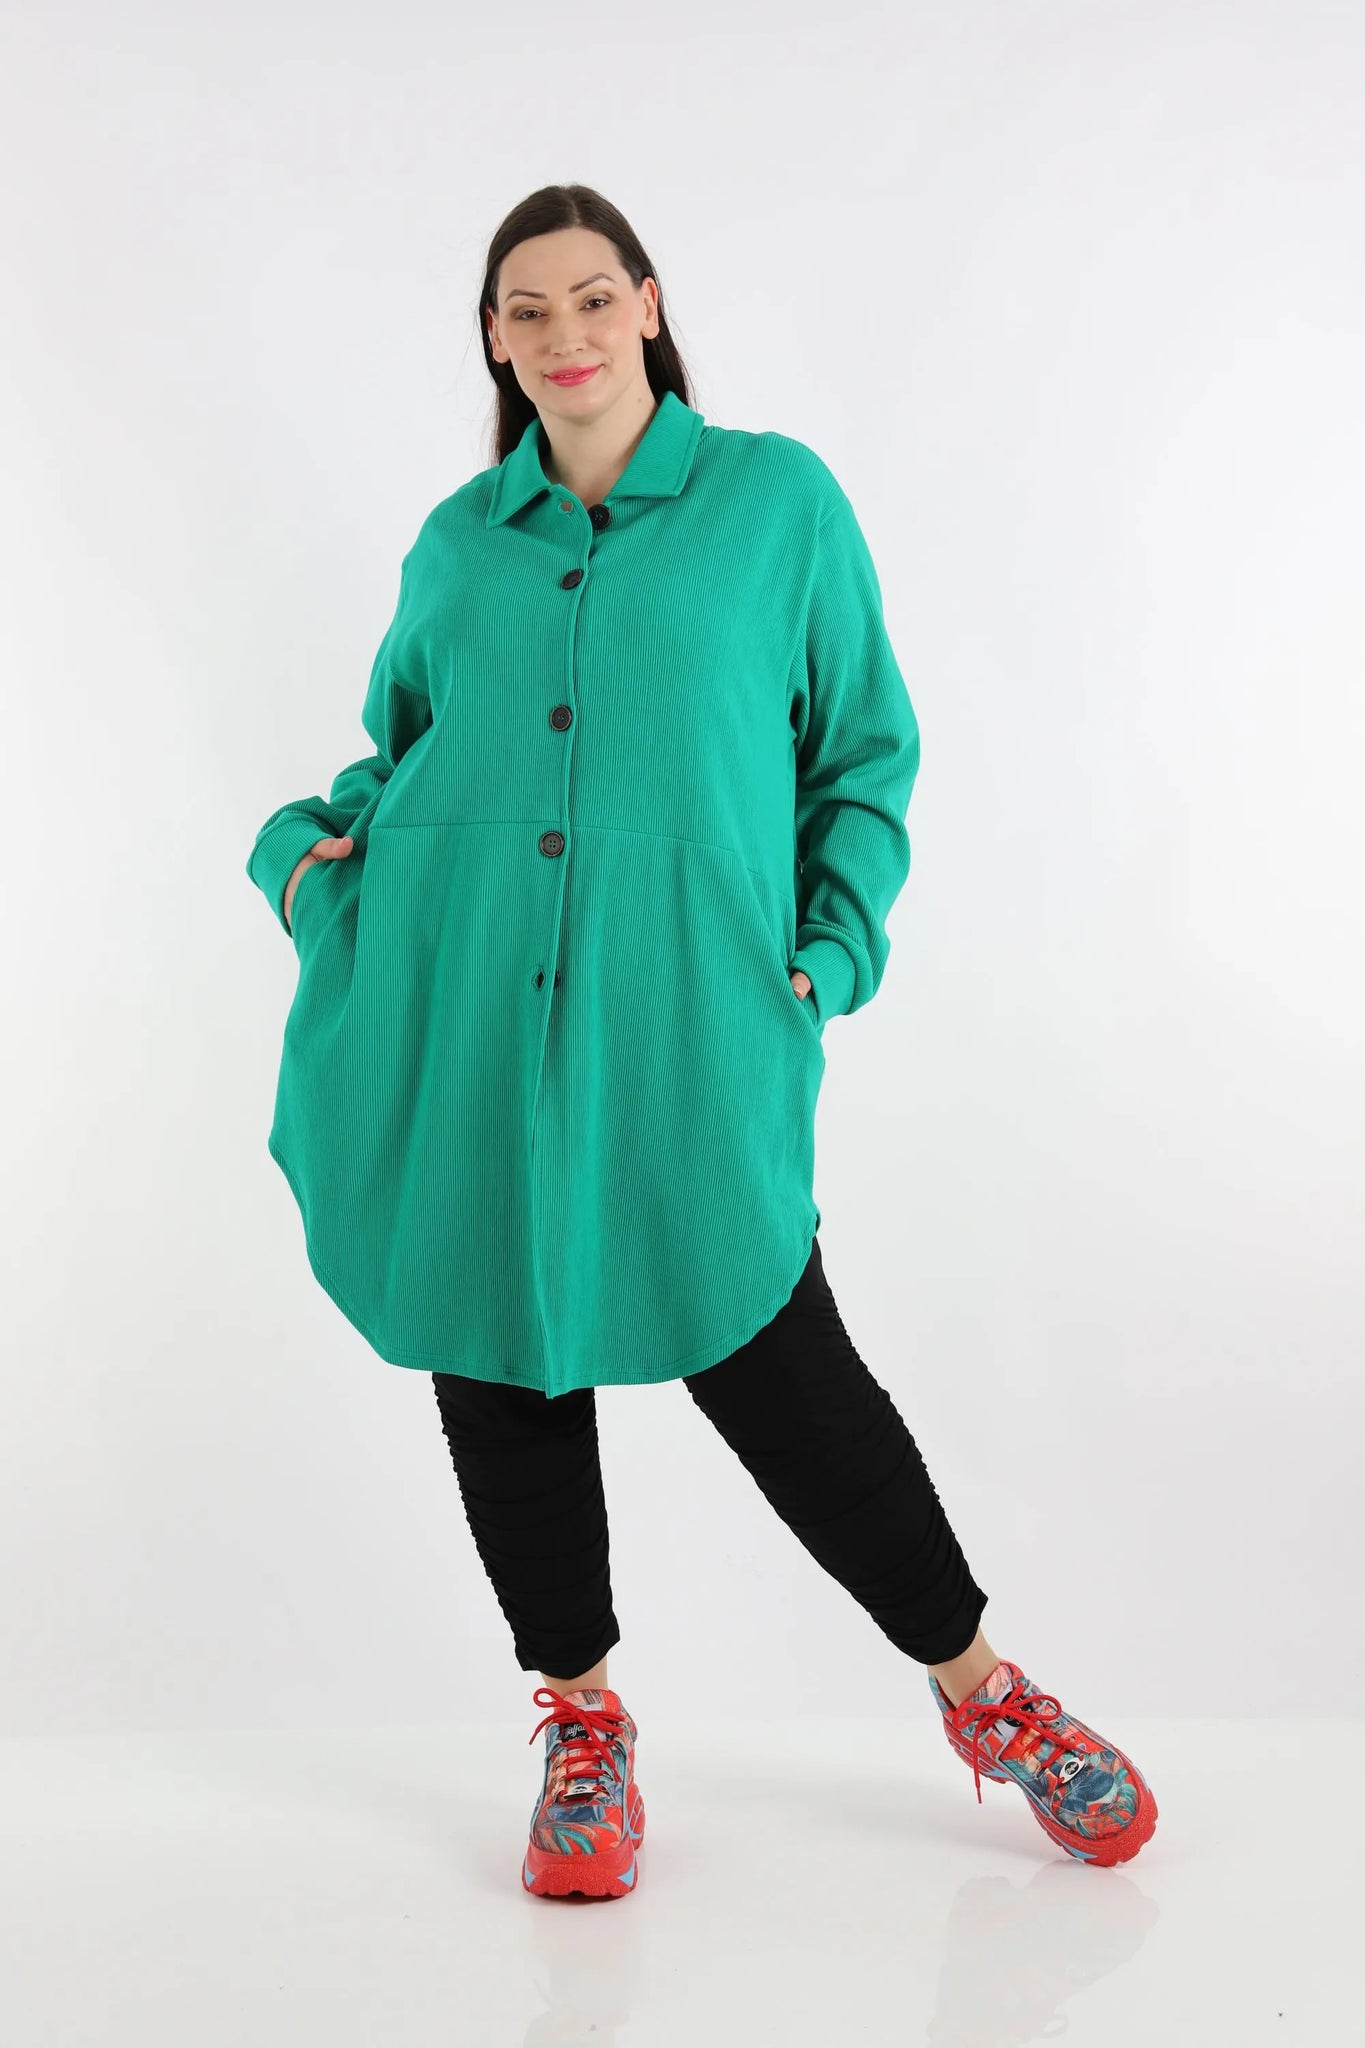 Bluse von AKH Fashion aus Baumwolle in gerundeter Form, 1252.06881, Grün, Schick, Modern